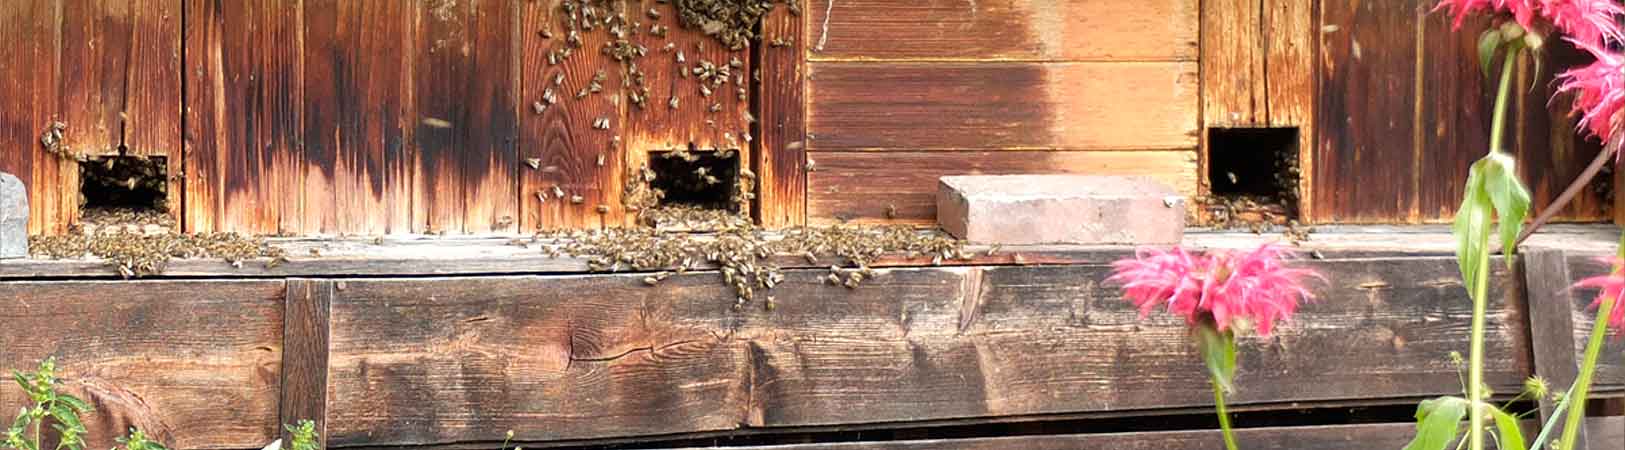 Bienen pflegen